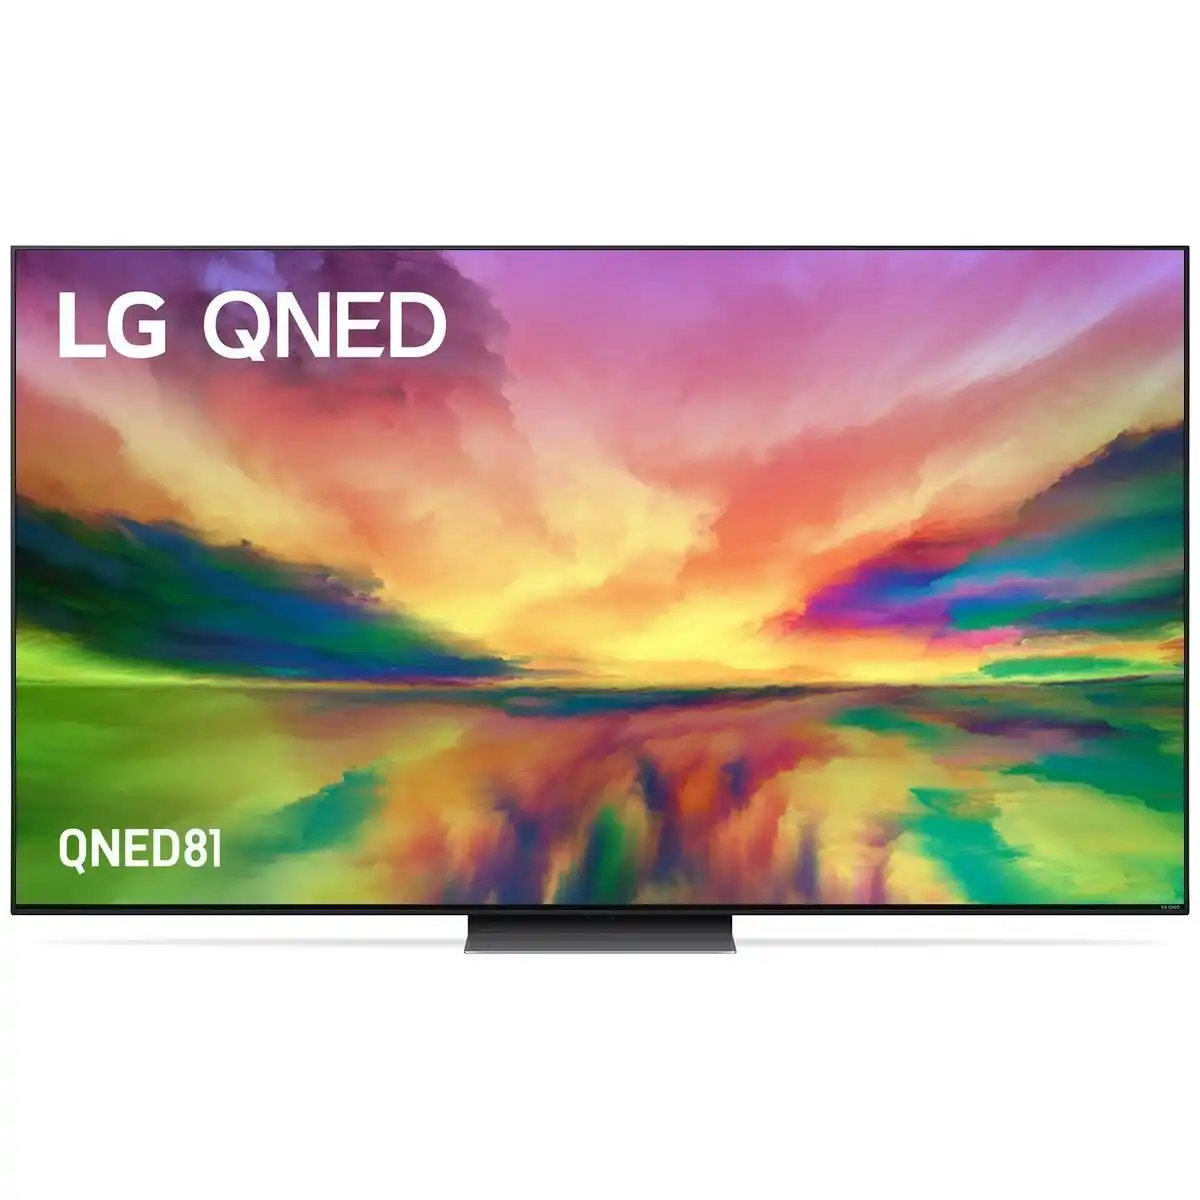 LG 65 Inch QNED81 4K UHD LED Smart TV